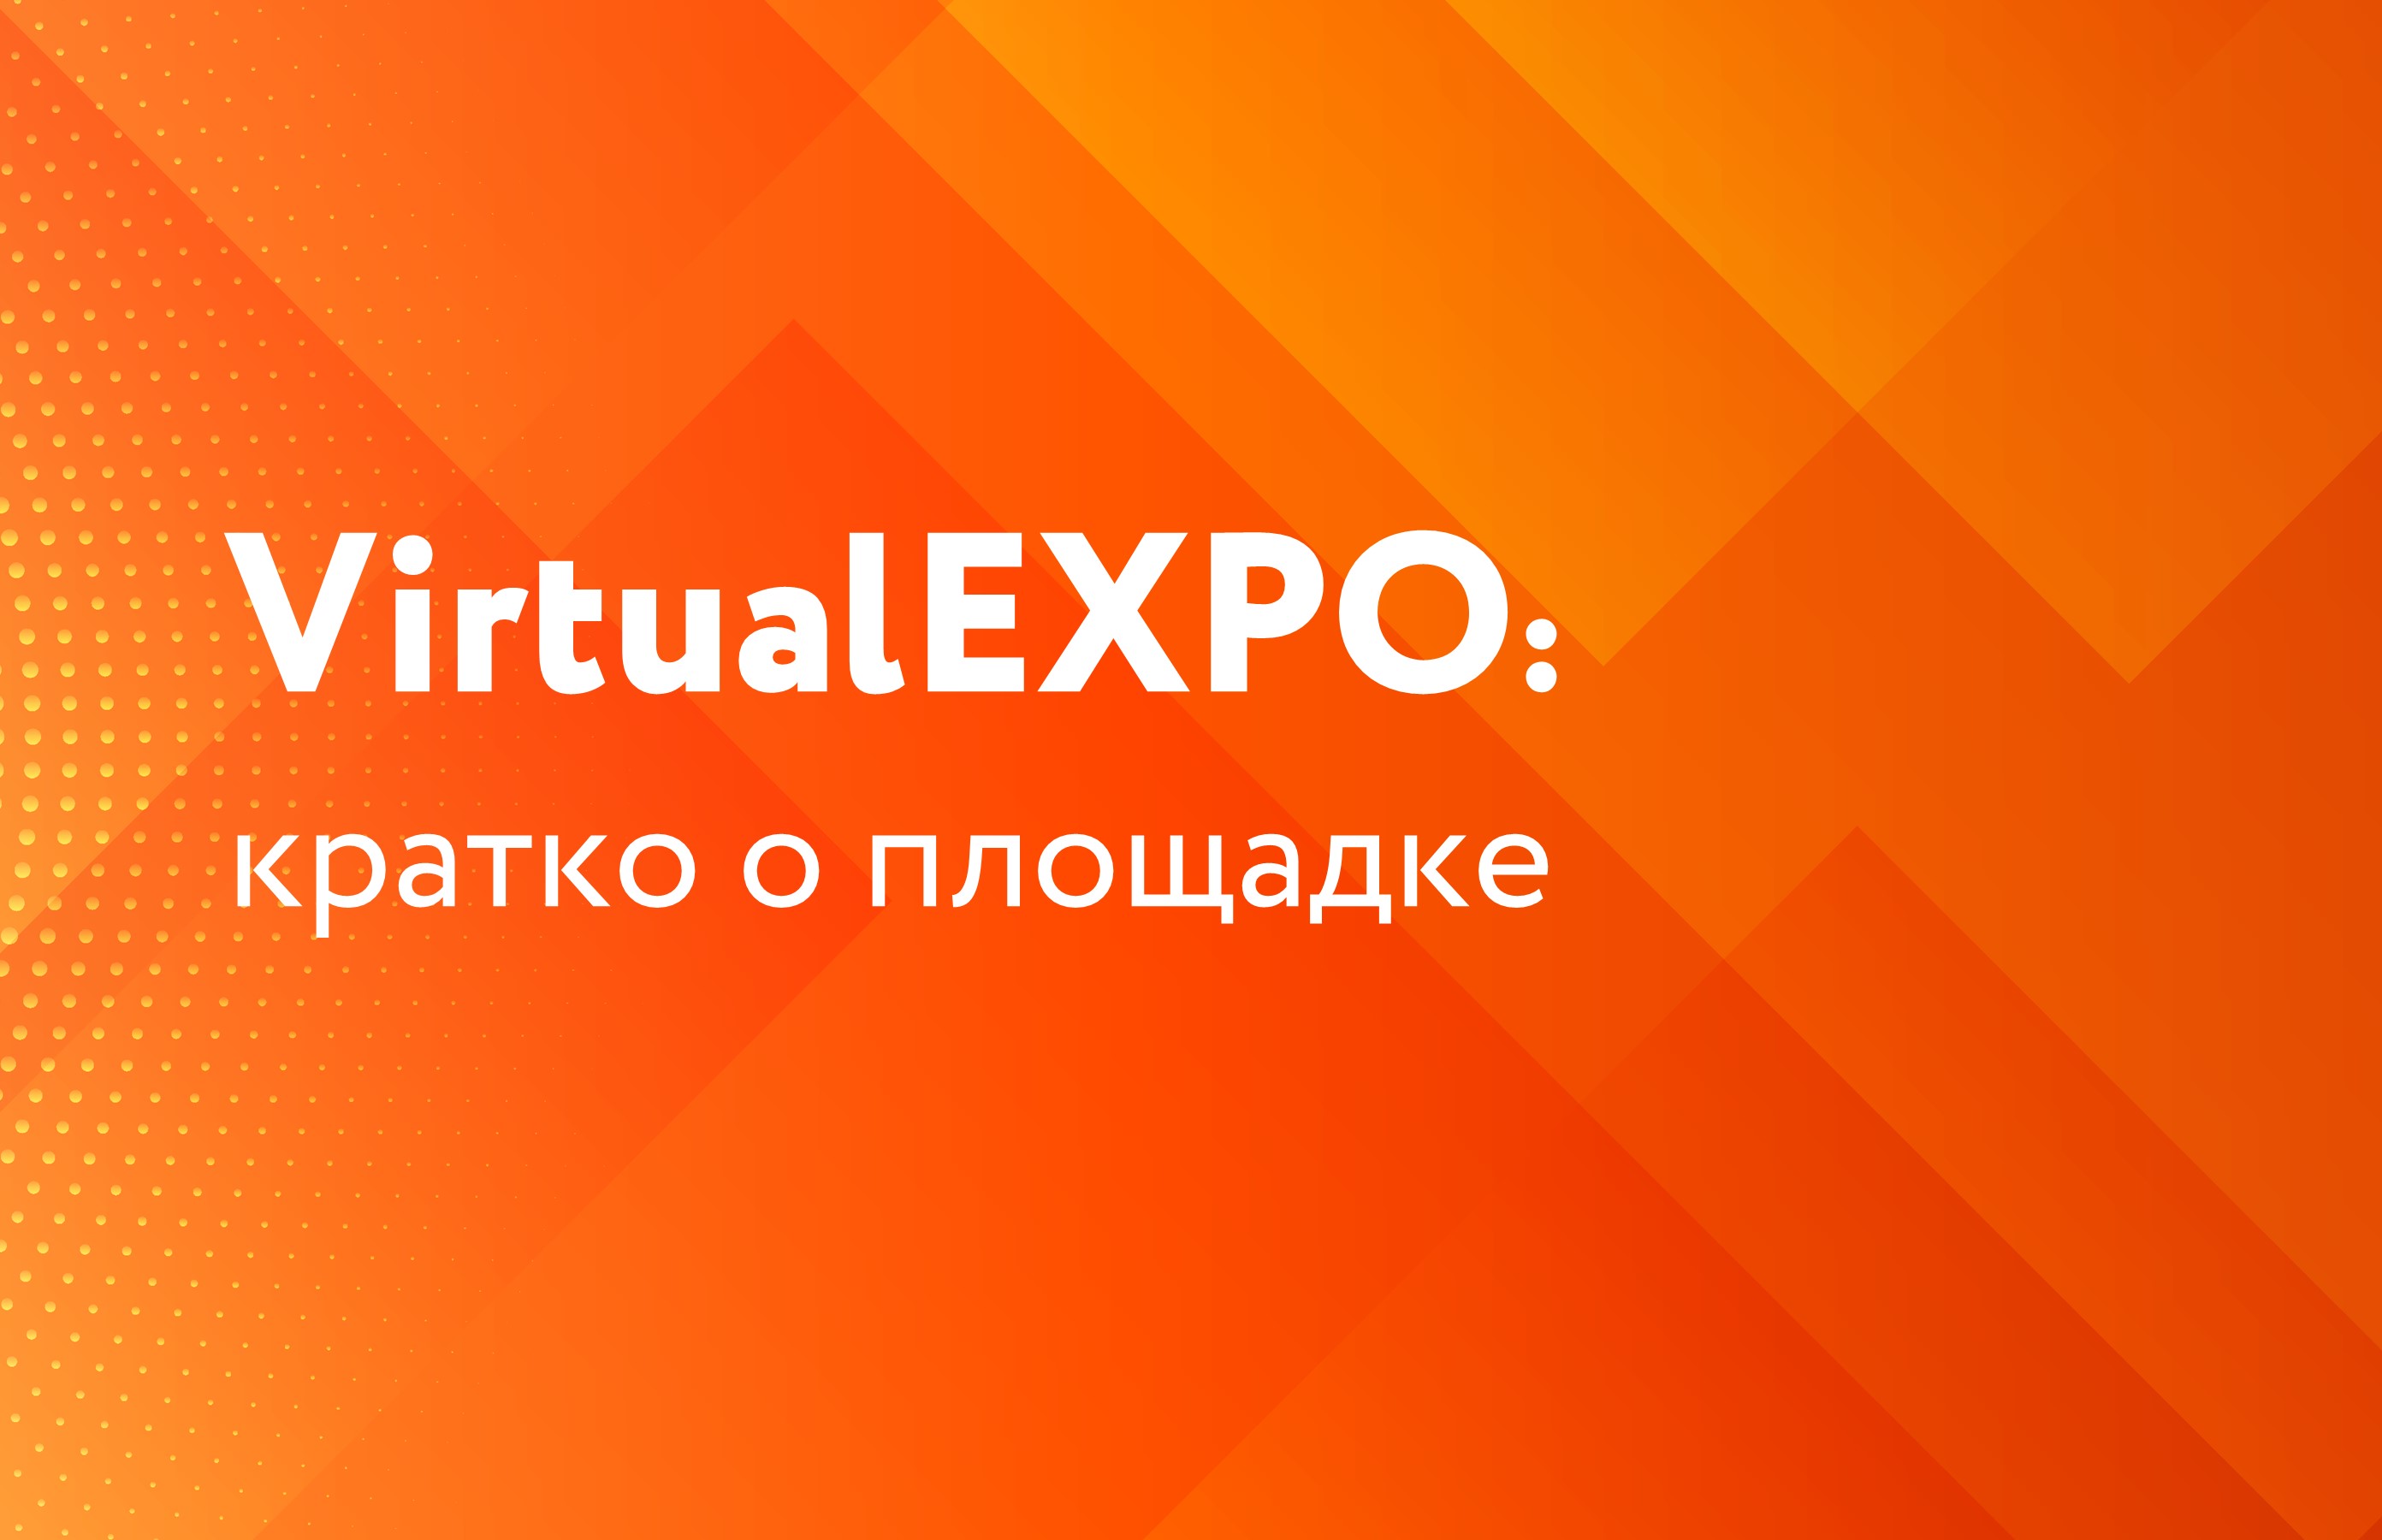 VirtualEXPO: кратко о площадках